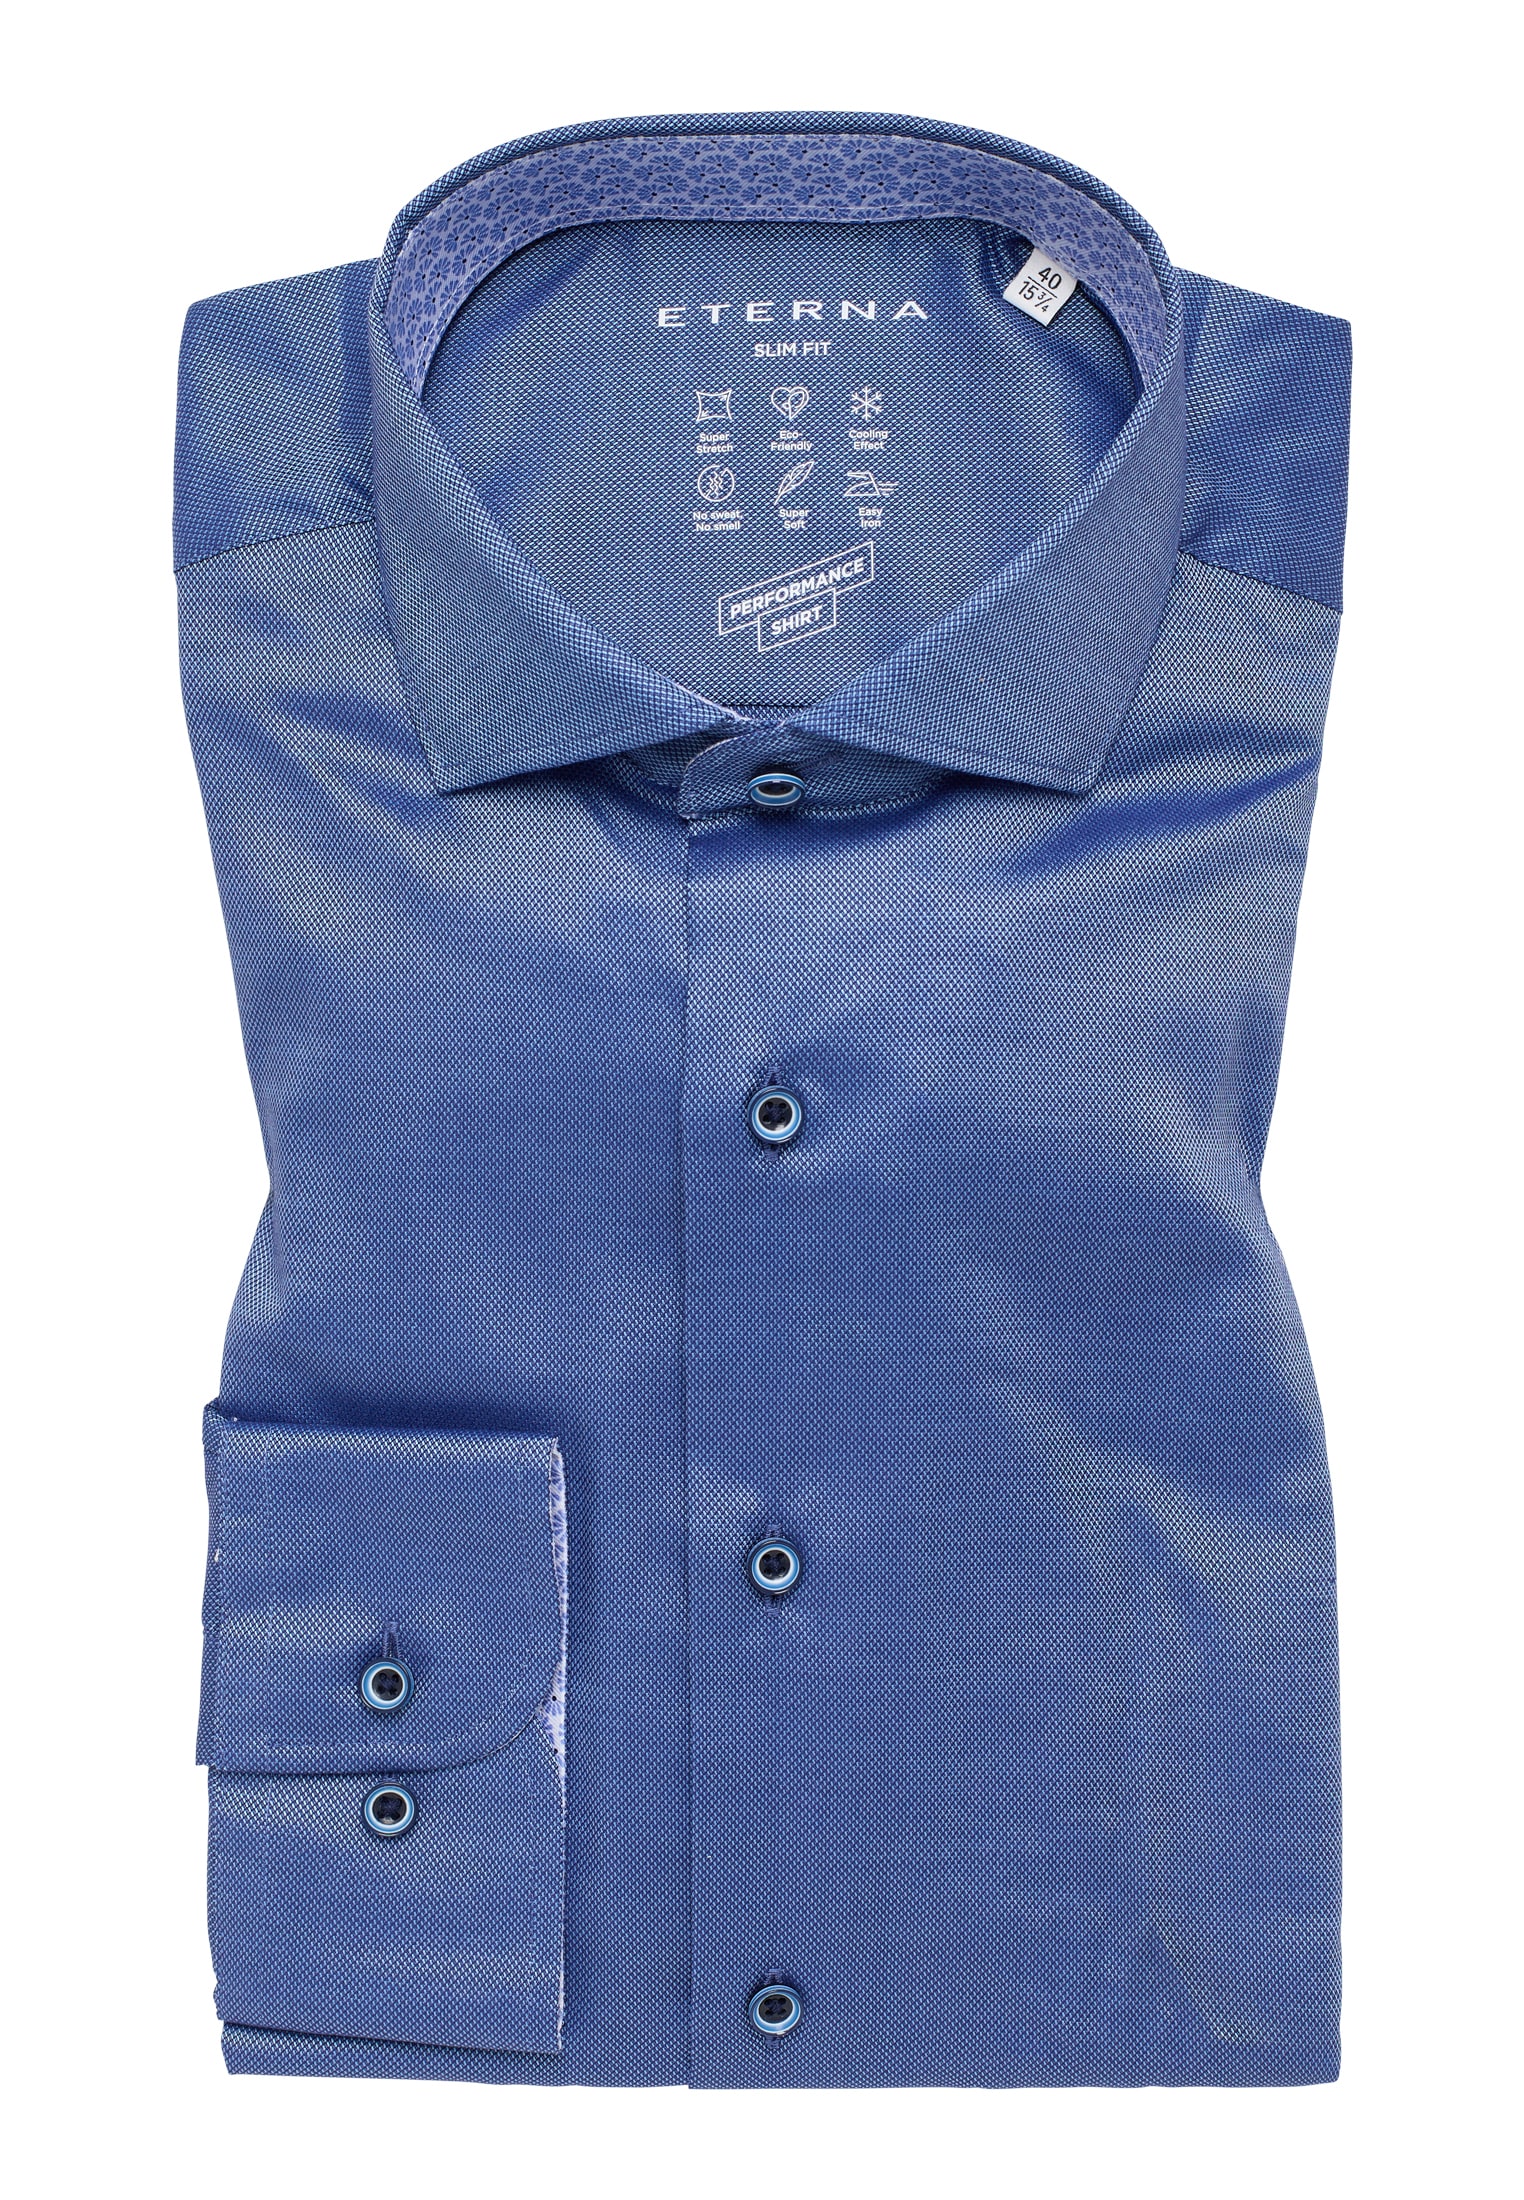 SLIM FIT Performance Shirt strukturiert | blau | 41 blau | | 1SH12542-01-41-41-1/1 in Langarm